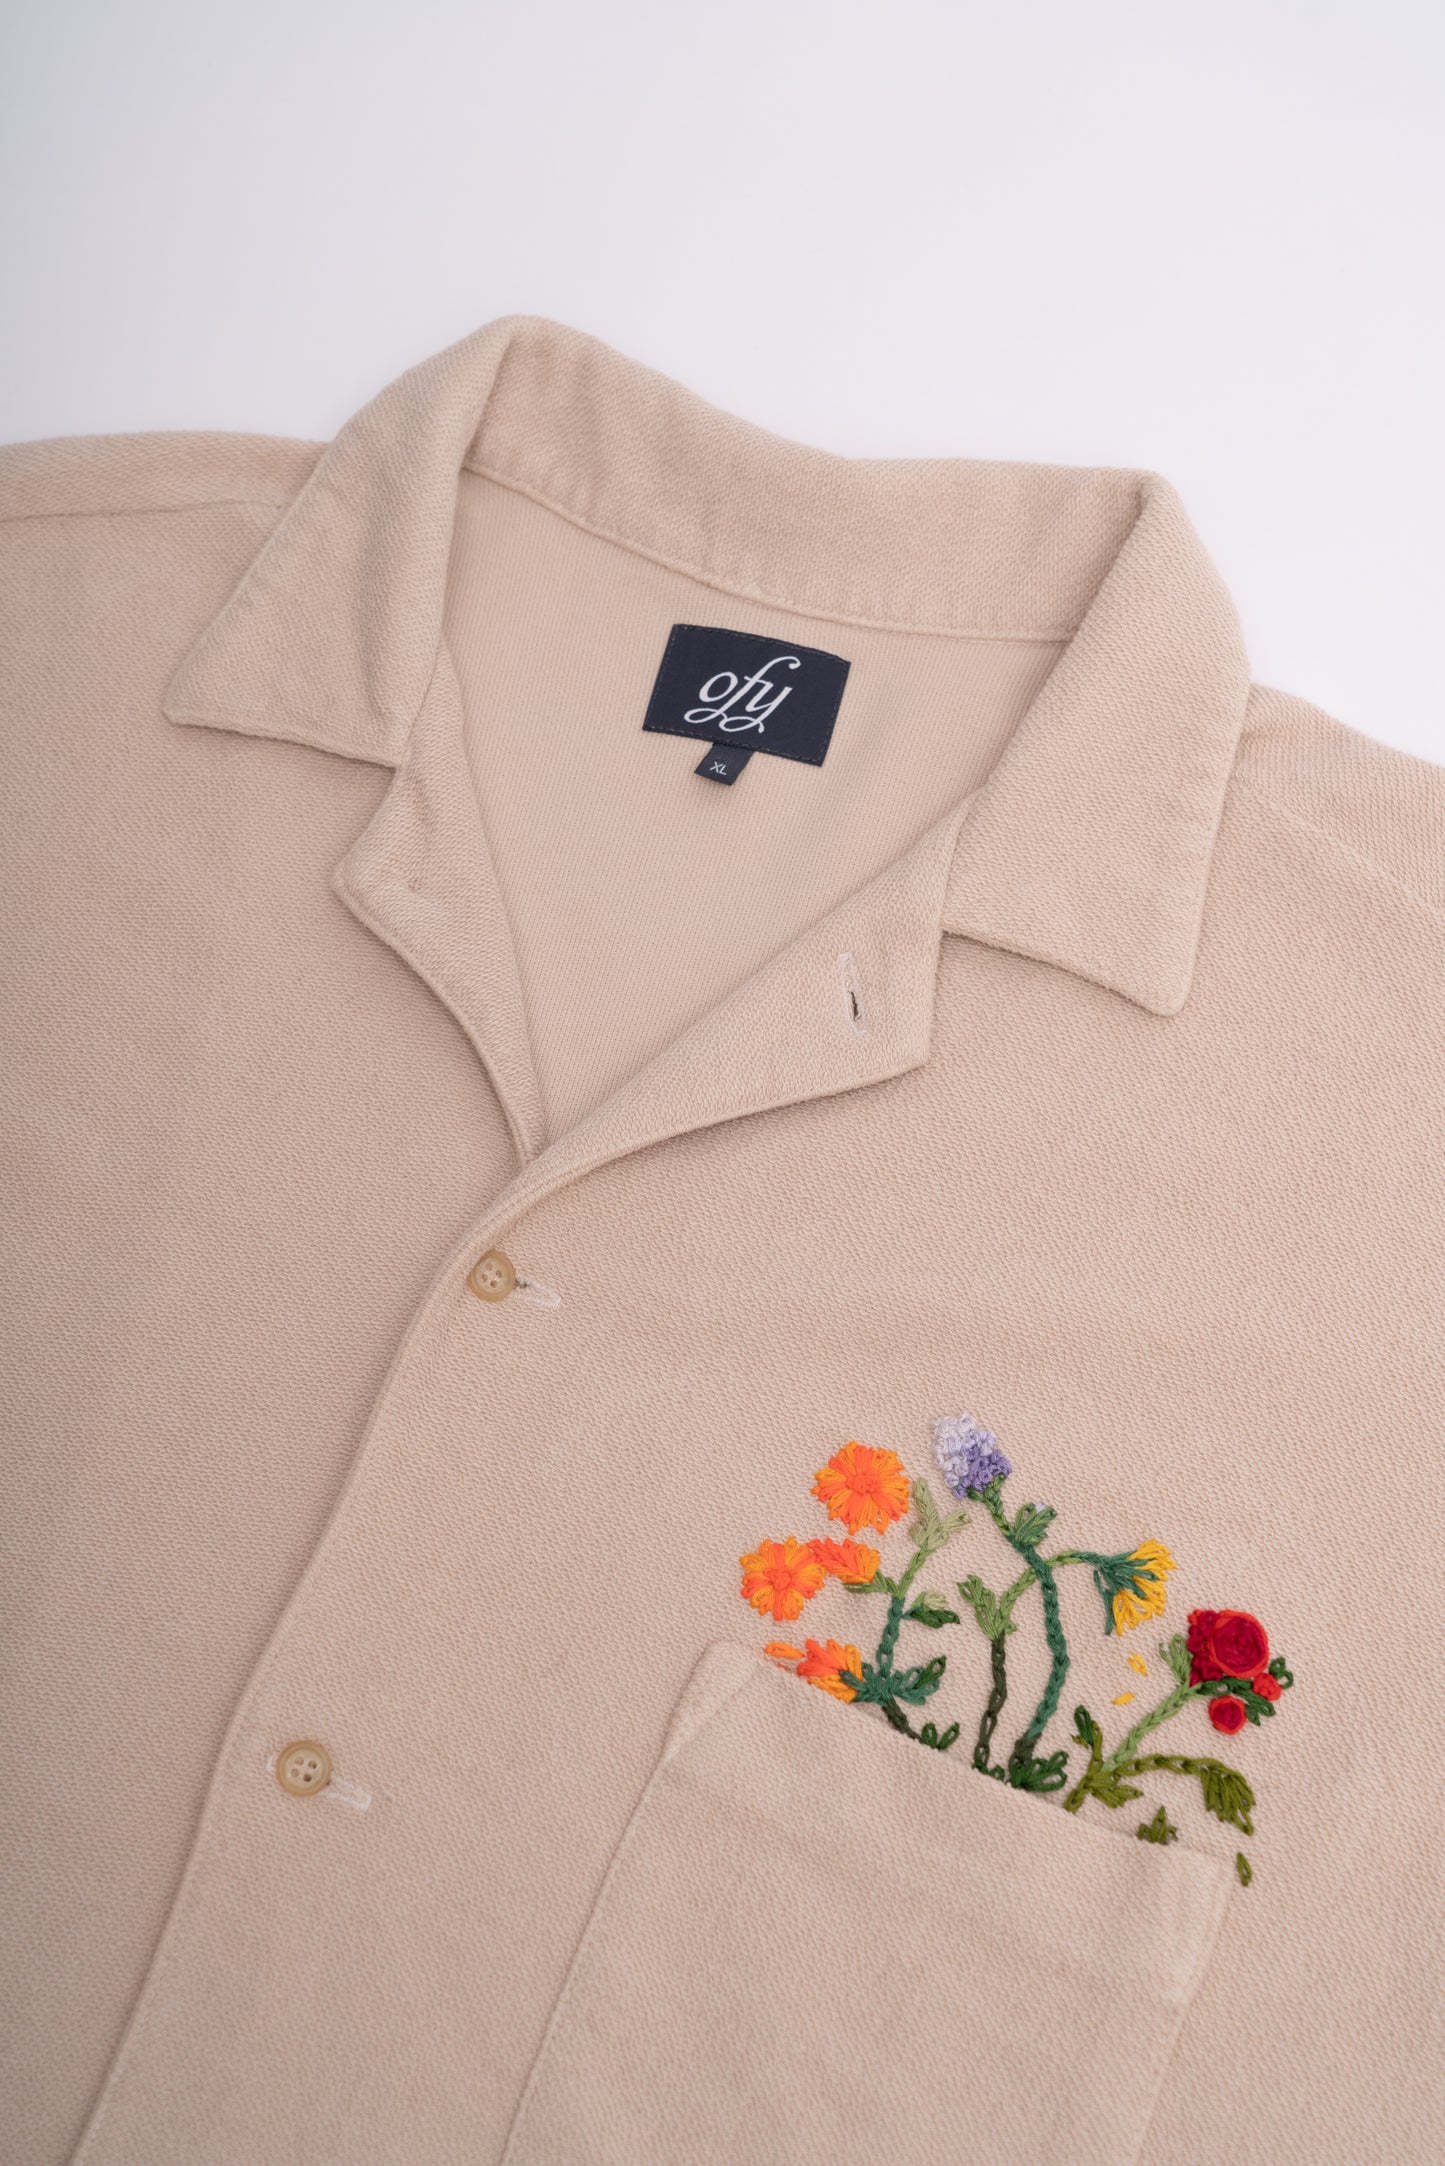 Horizon Shirt - Peach Floral